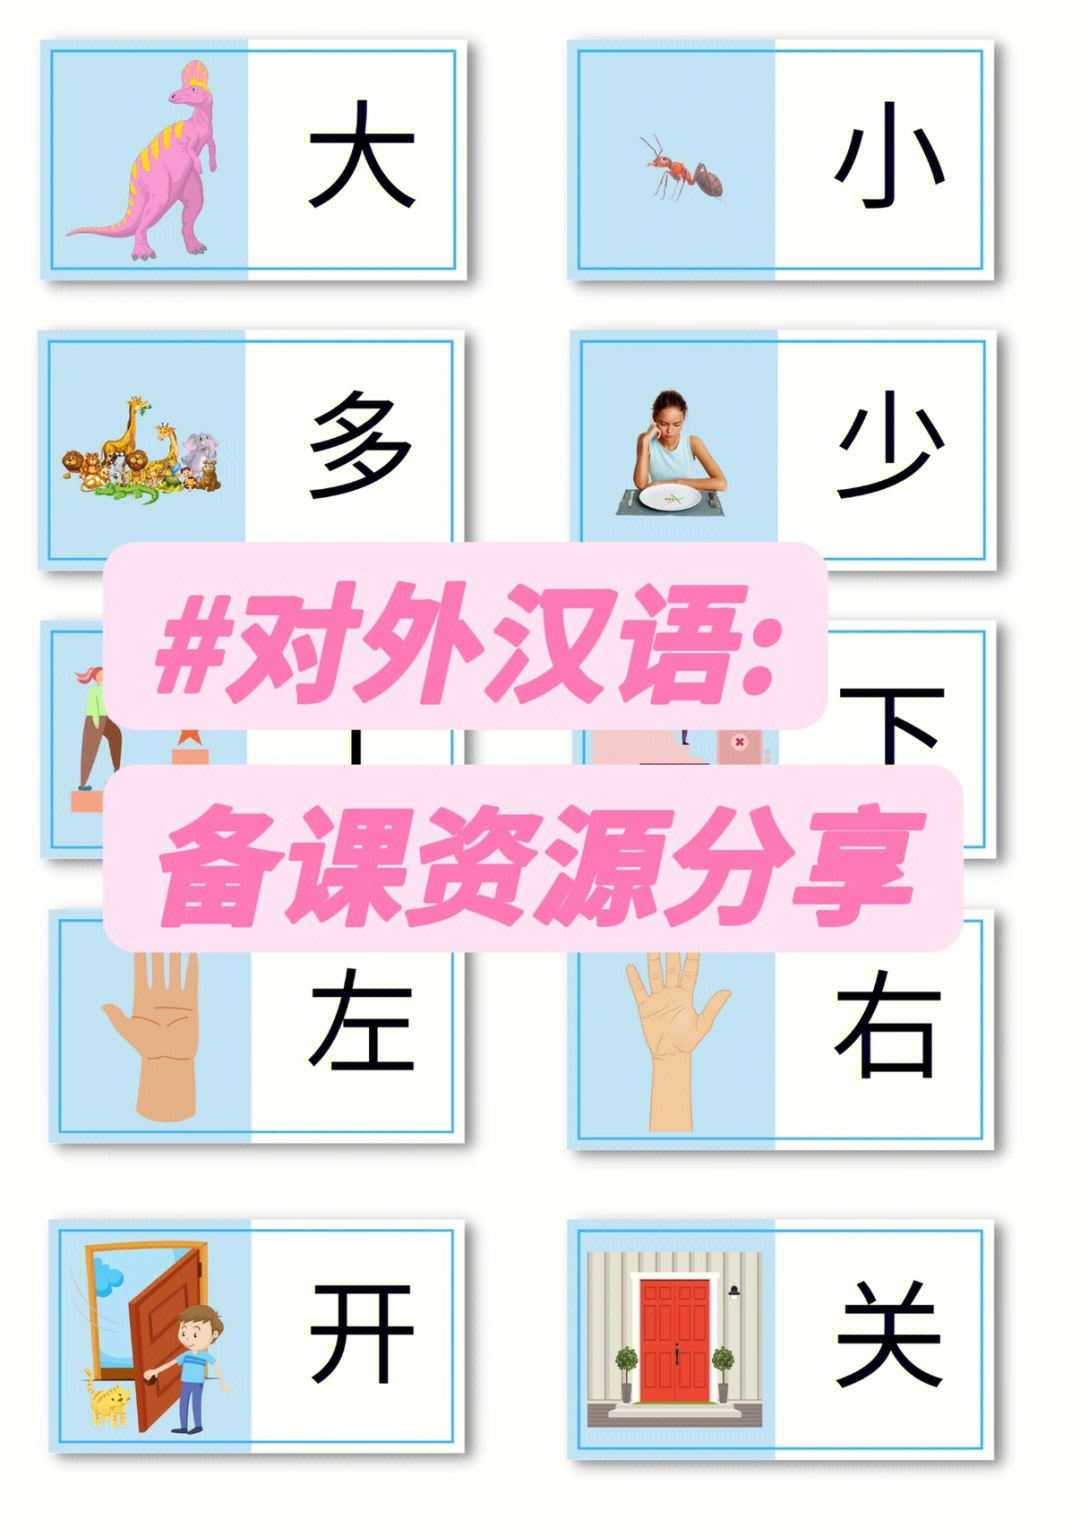 对外汉语备课资源常用反义词